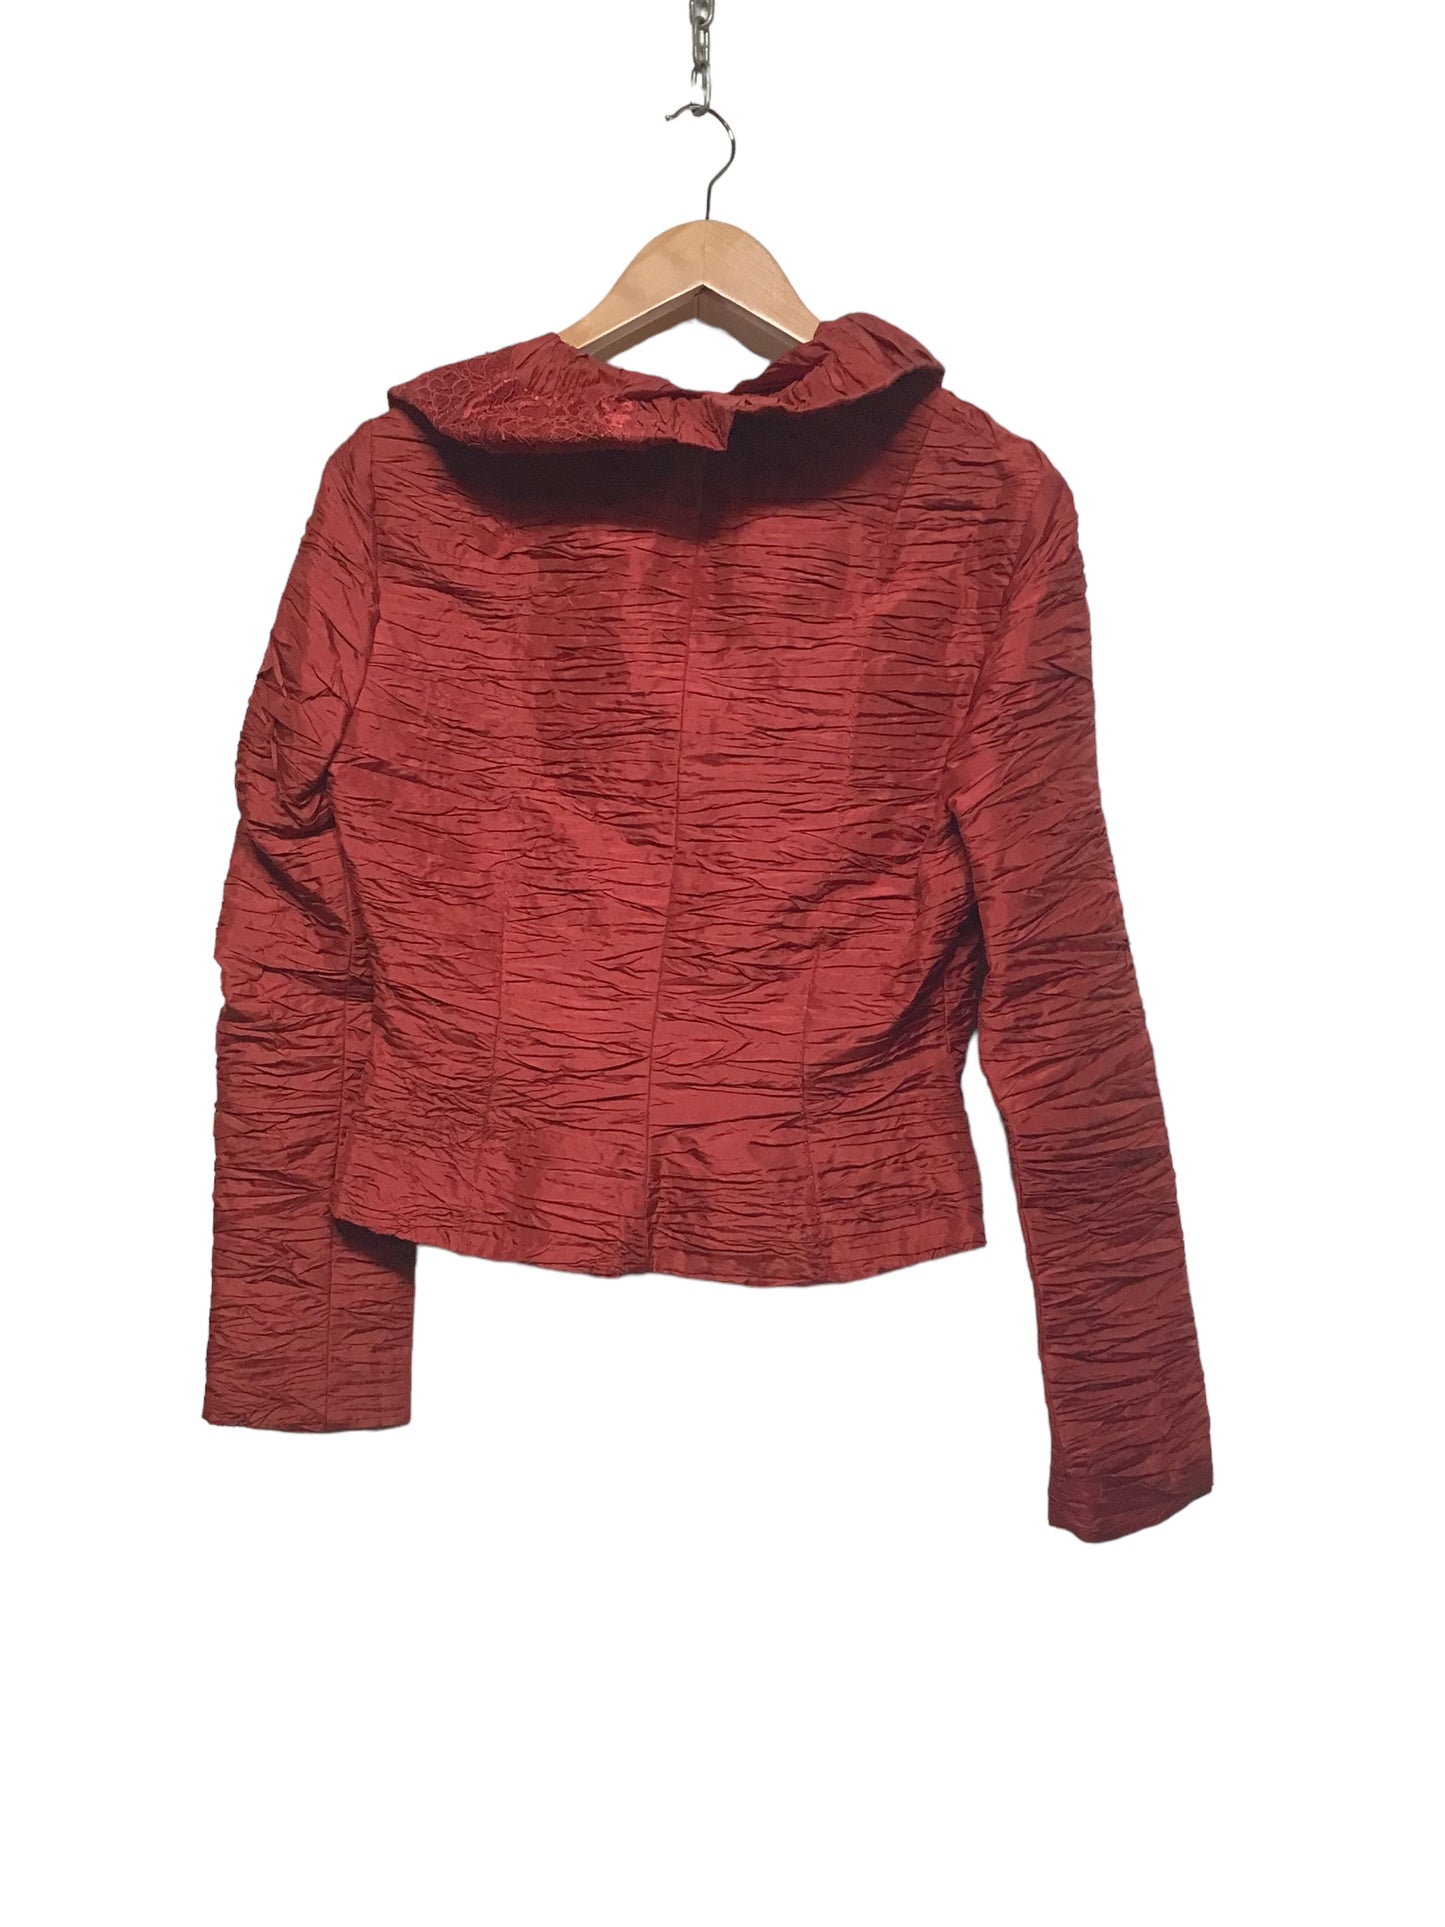 Red Textured Blazer (Size M)